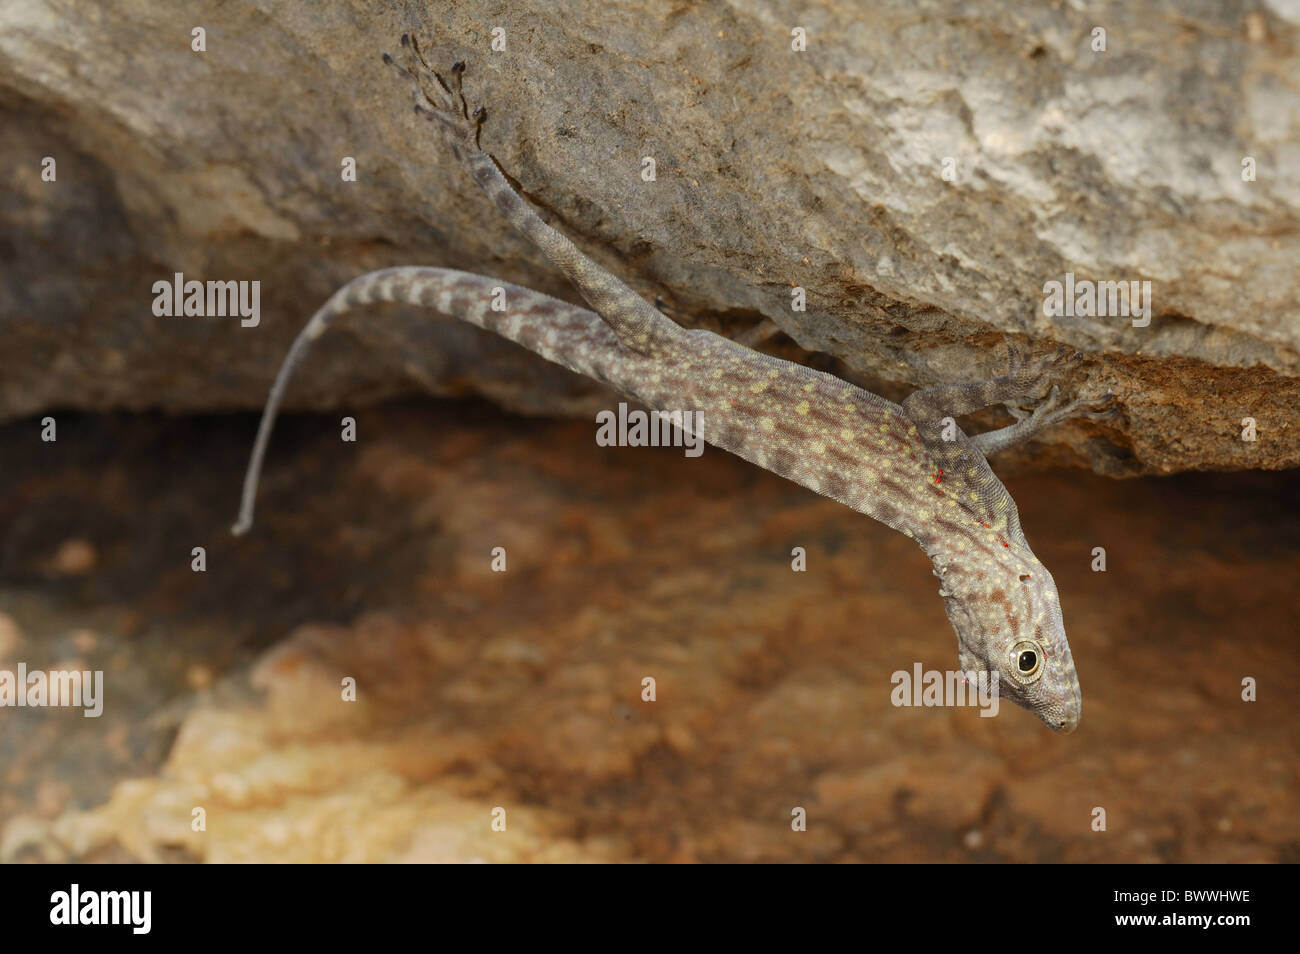 endemism gecko Invertebrates Pristurus insignis reptile Socotra Vertebrates Yemen animal animals reptile reptiles lizard Stock Photo